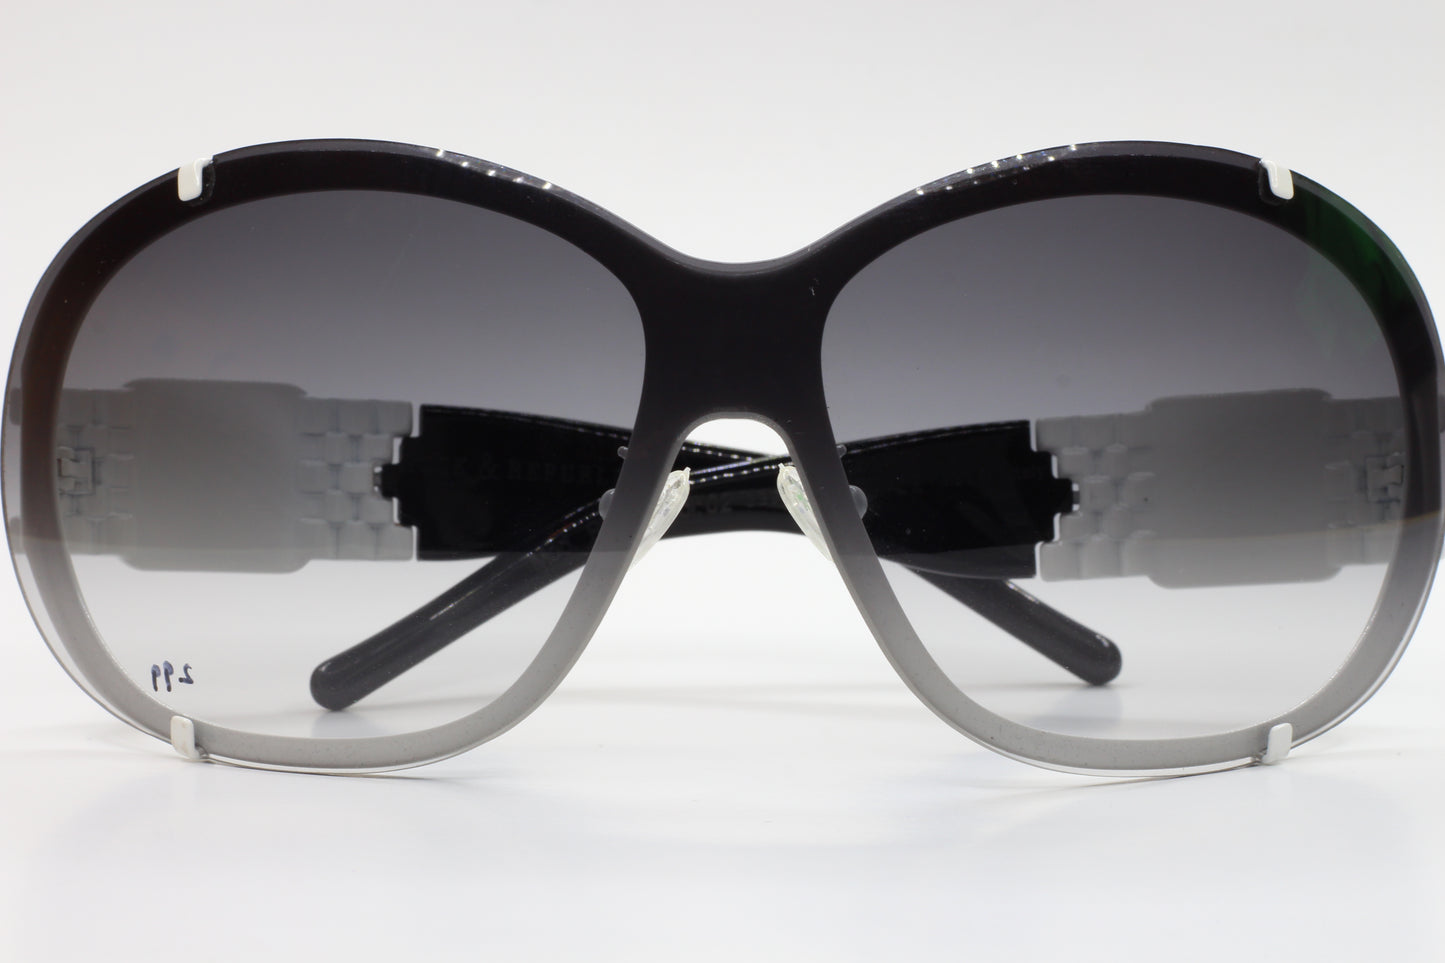 Rock & Republic RR502 02 White Limited Edition Sunglasses